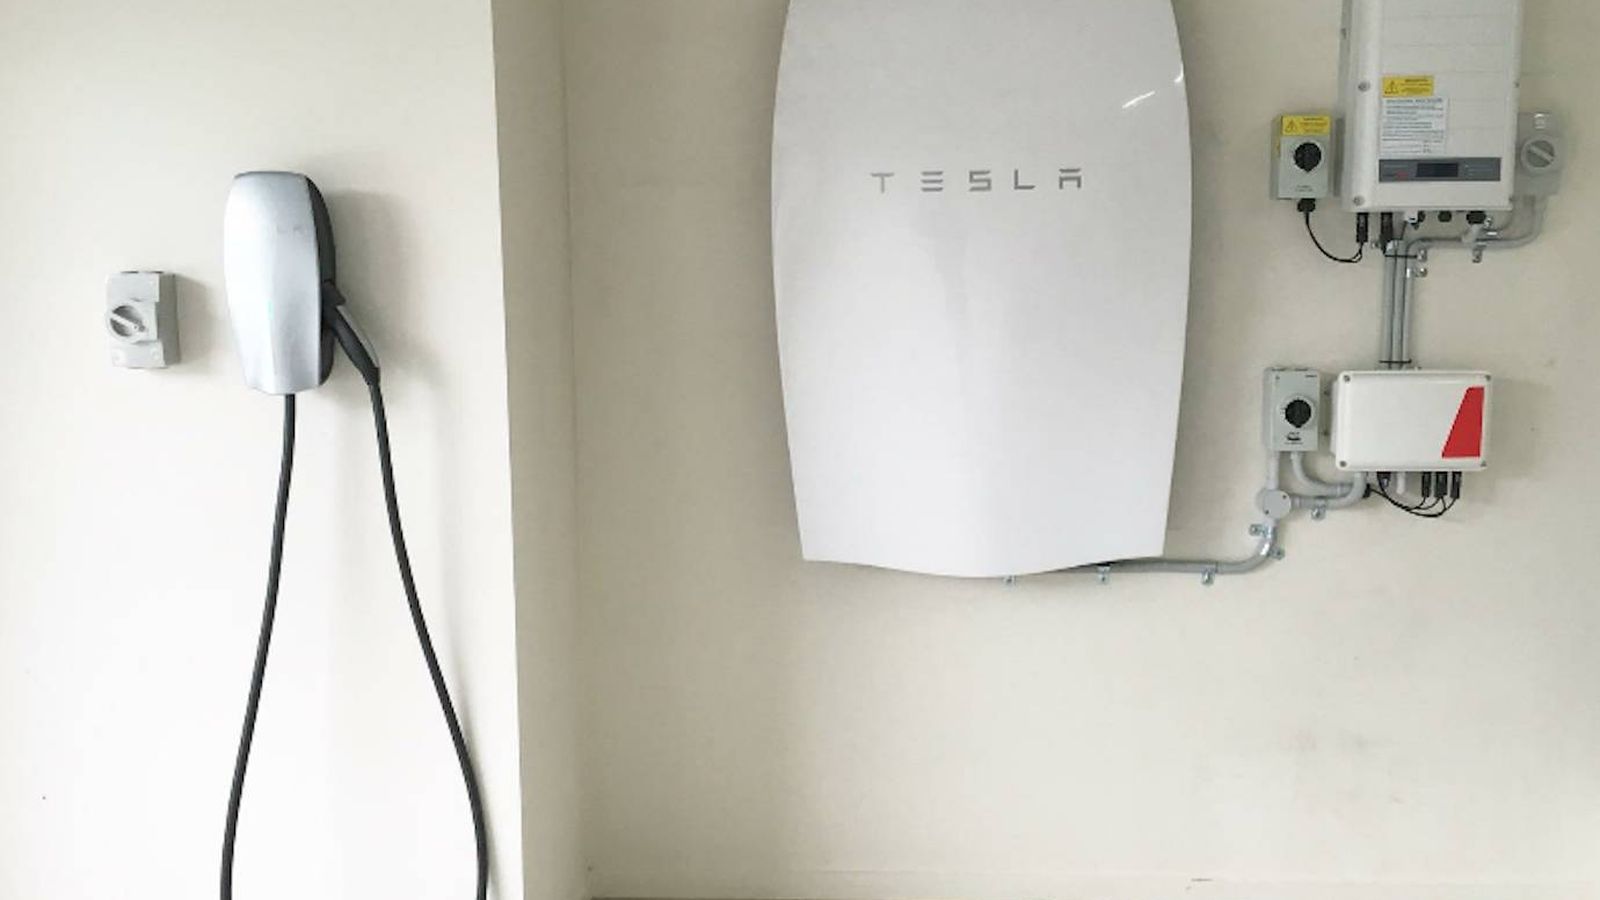 Un de la batería Powerwall de Tesla: "Esto en España no va a triunfar"